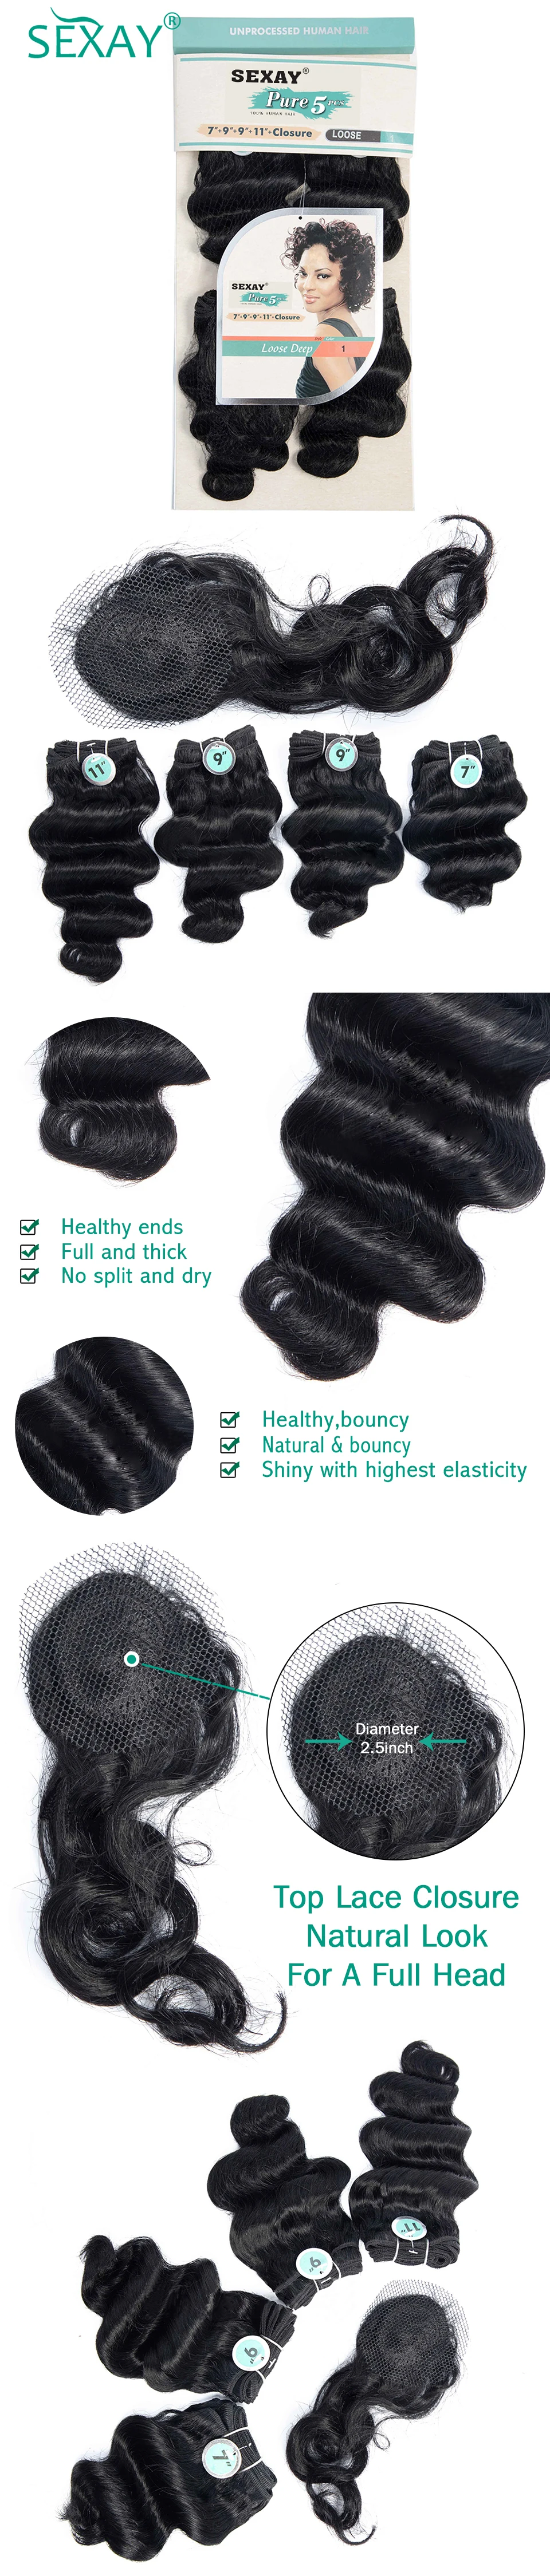 4 Связки с верхней синтетическое закрытие шнурка SEXAY не волосы remy 100% пряди человеческих волос для наращивания #1 темно-черный цвет